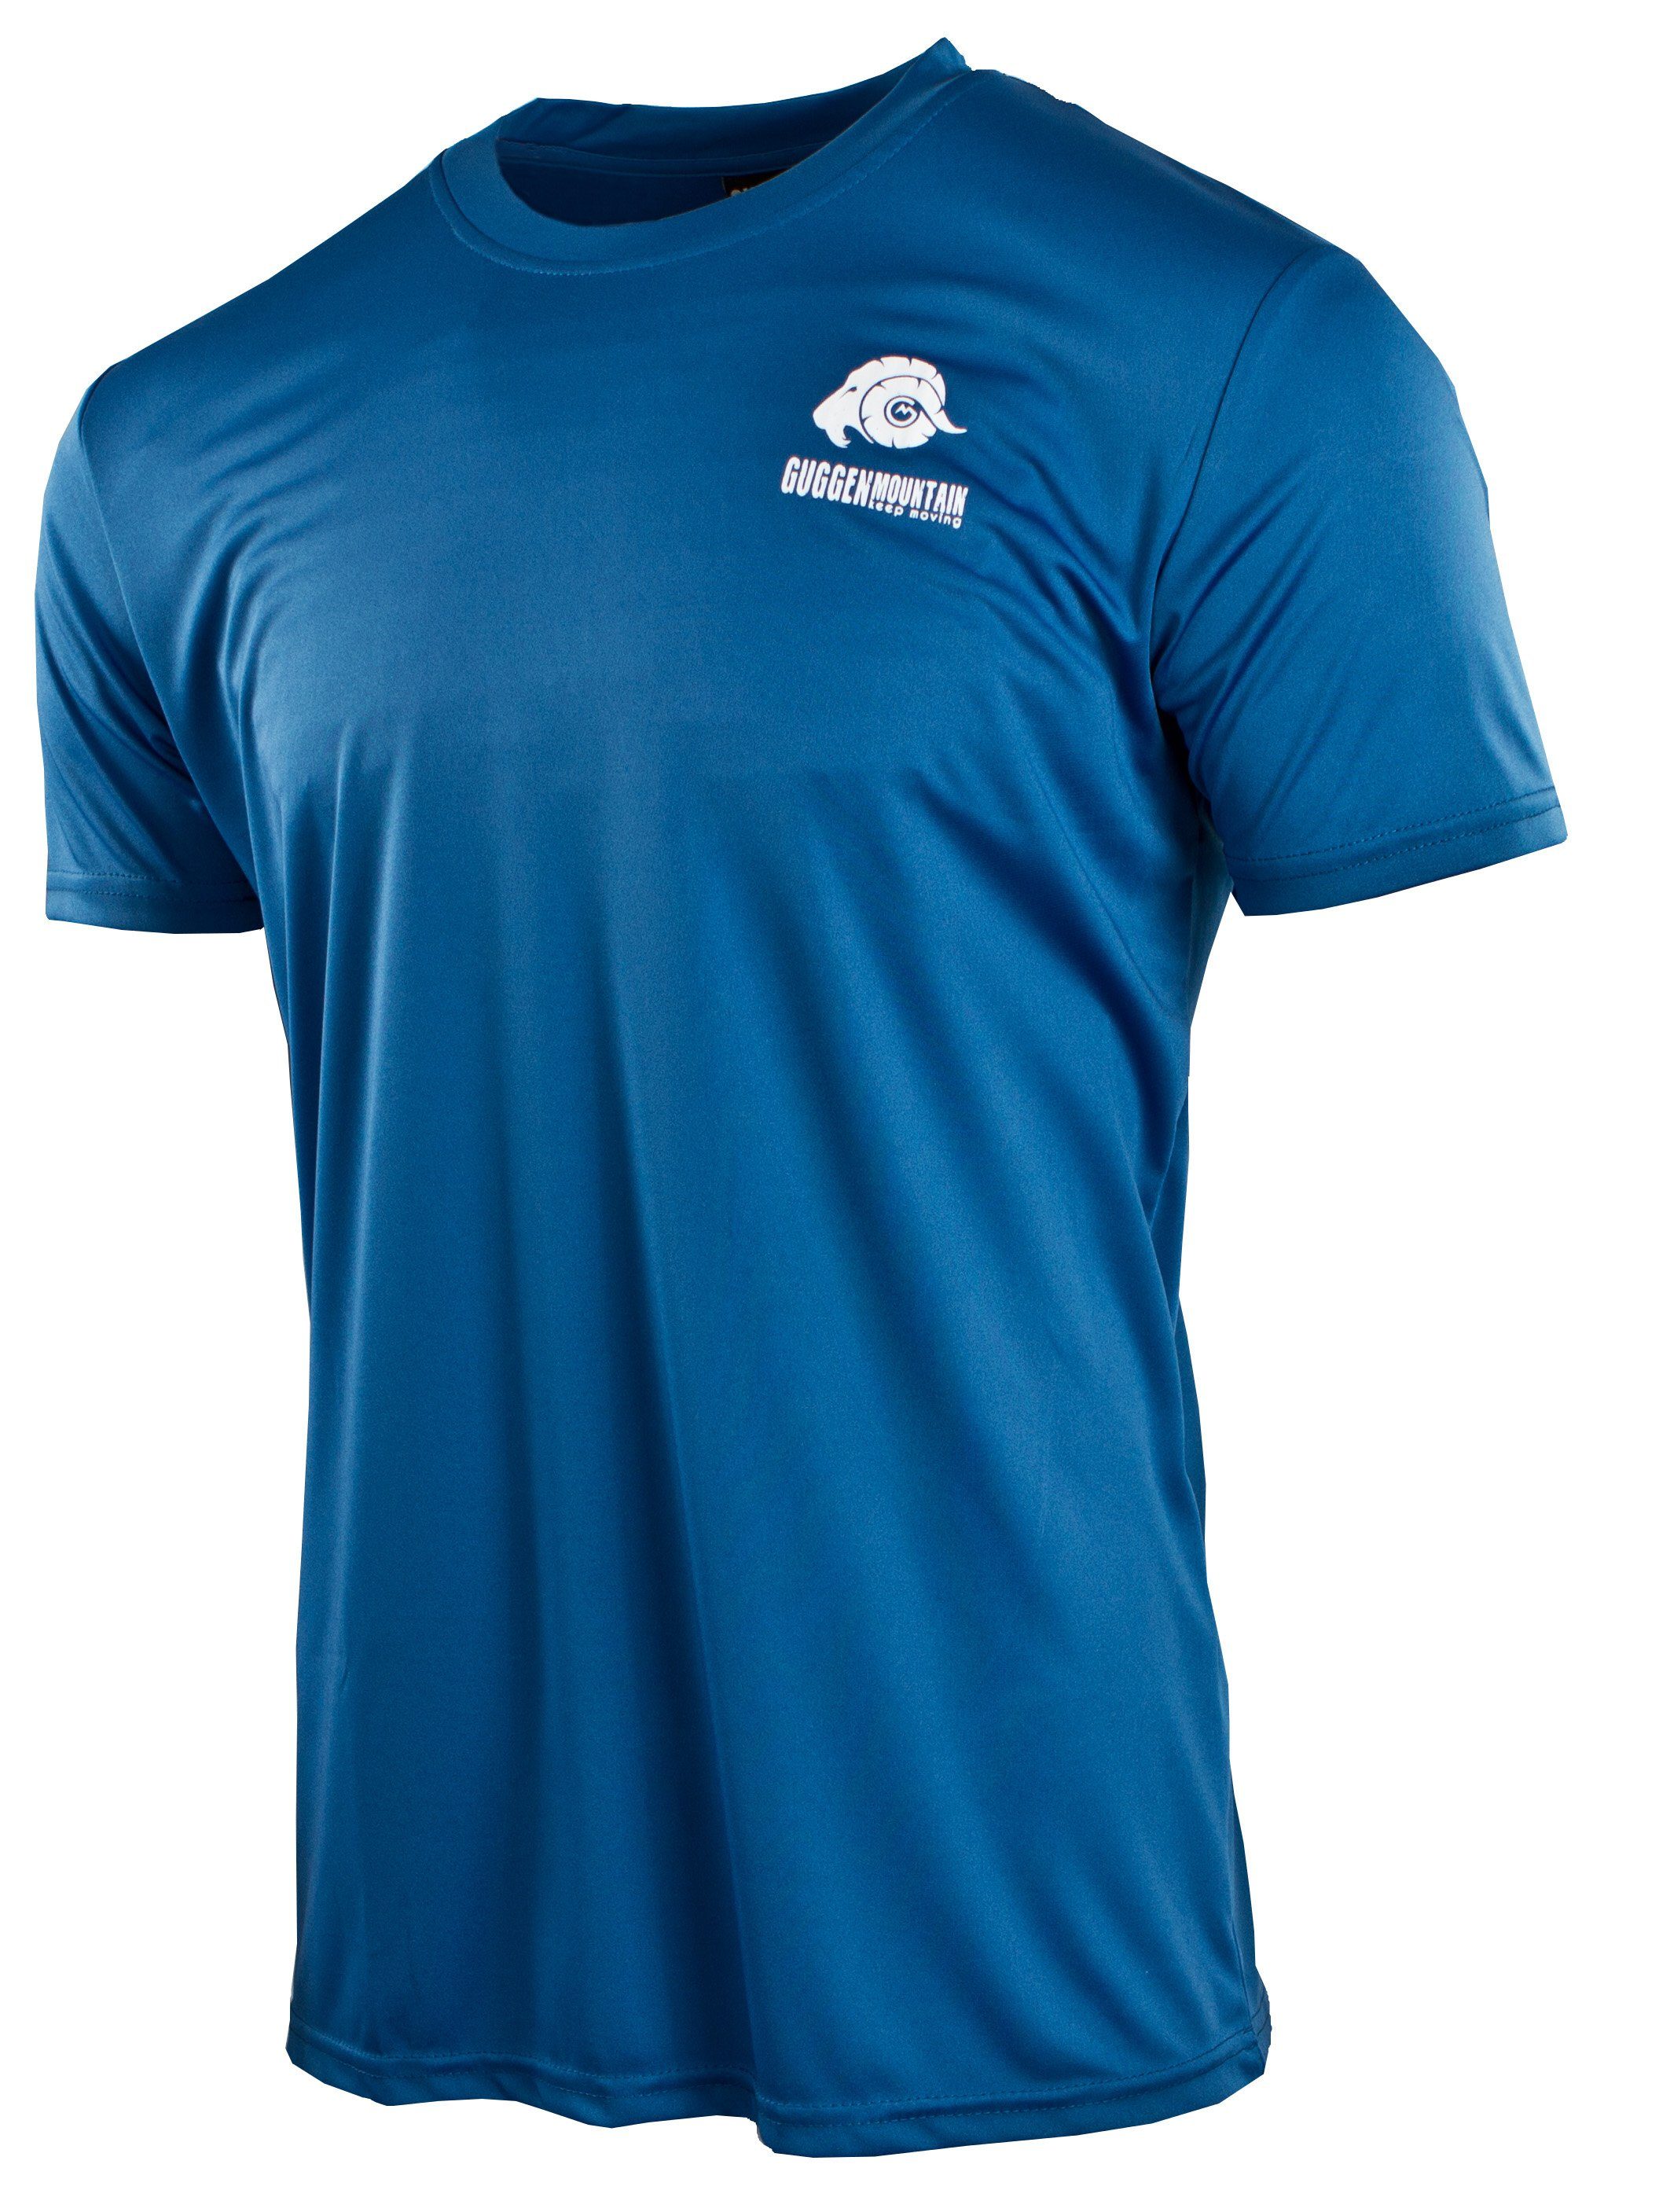 Funktionsshirt GUGGEN Logo Blau-MIT-Logo in FW04 Unifarben, Herren Sportshirt Mountain Kurzarm Funktionsshirt T-Shirt